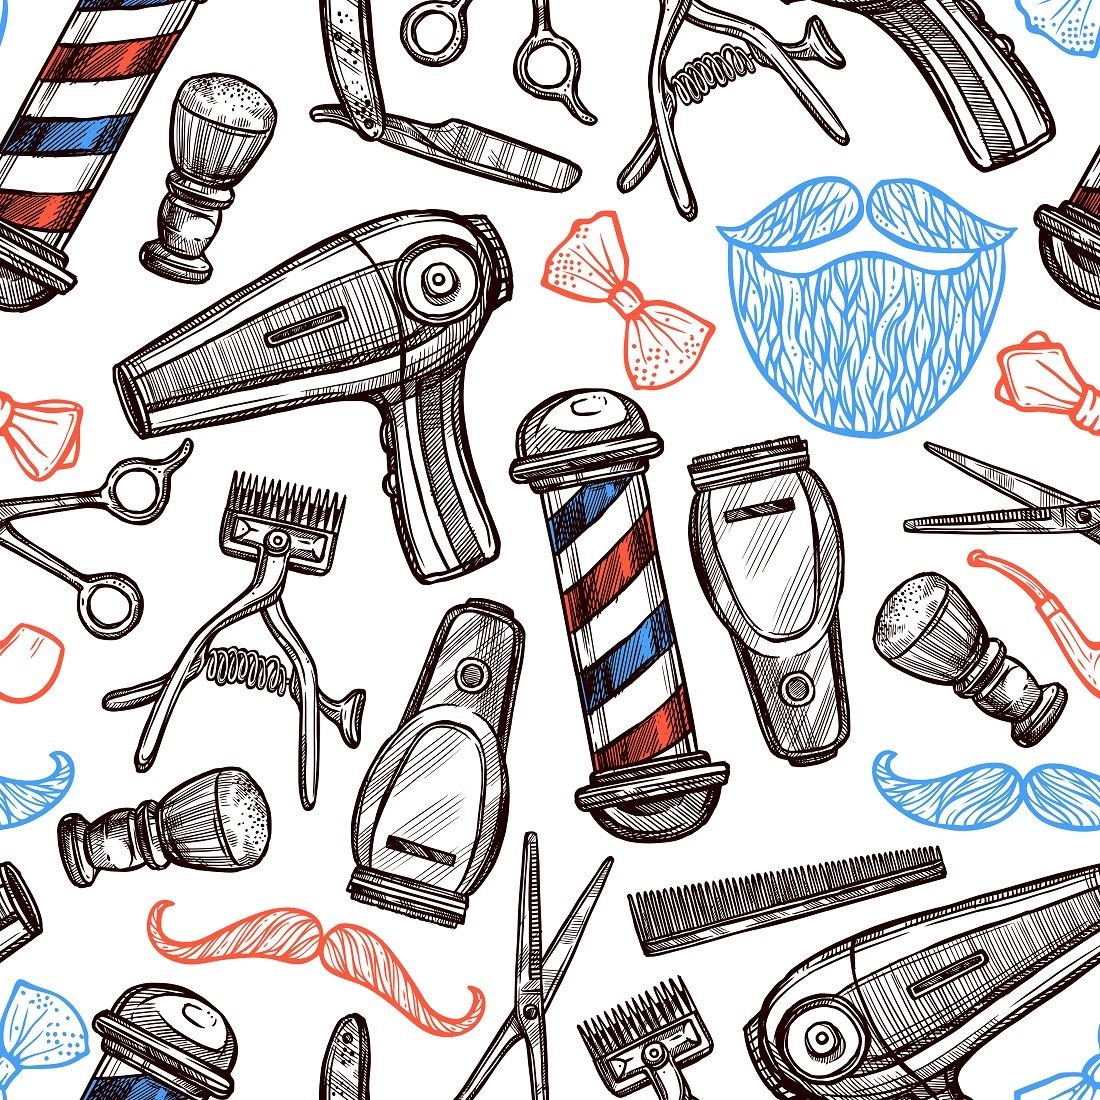 مهمترین وسایلی که هر آرایشگری باید در آرایشگاه خودش داشته باشد چیست؟